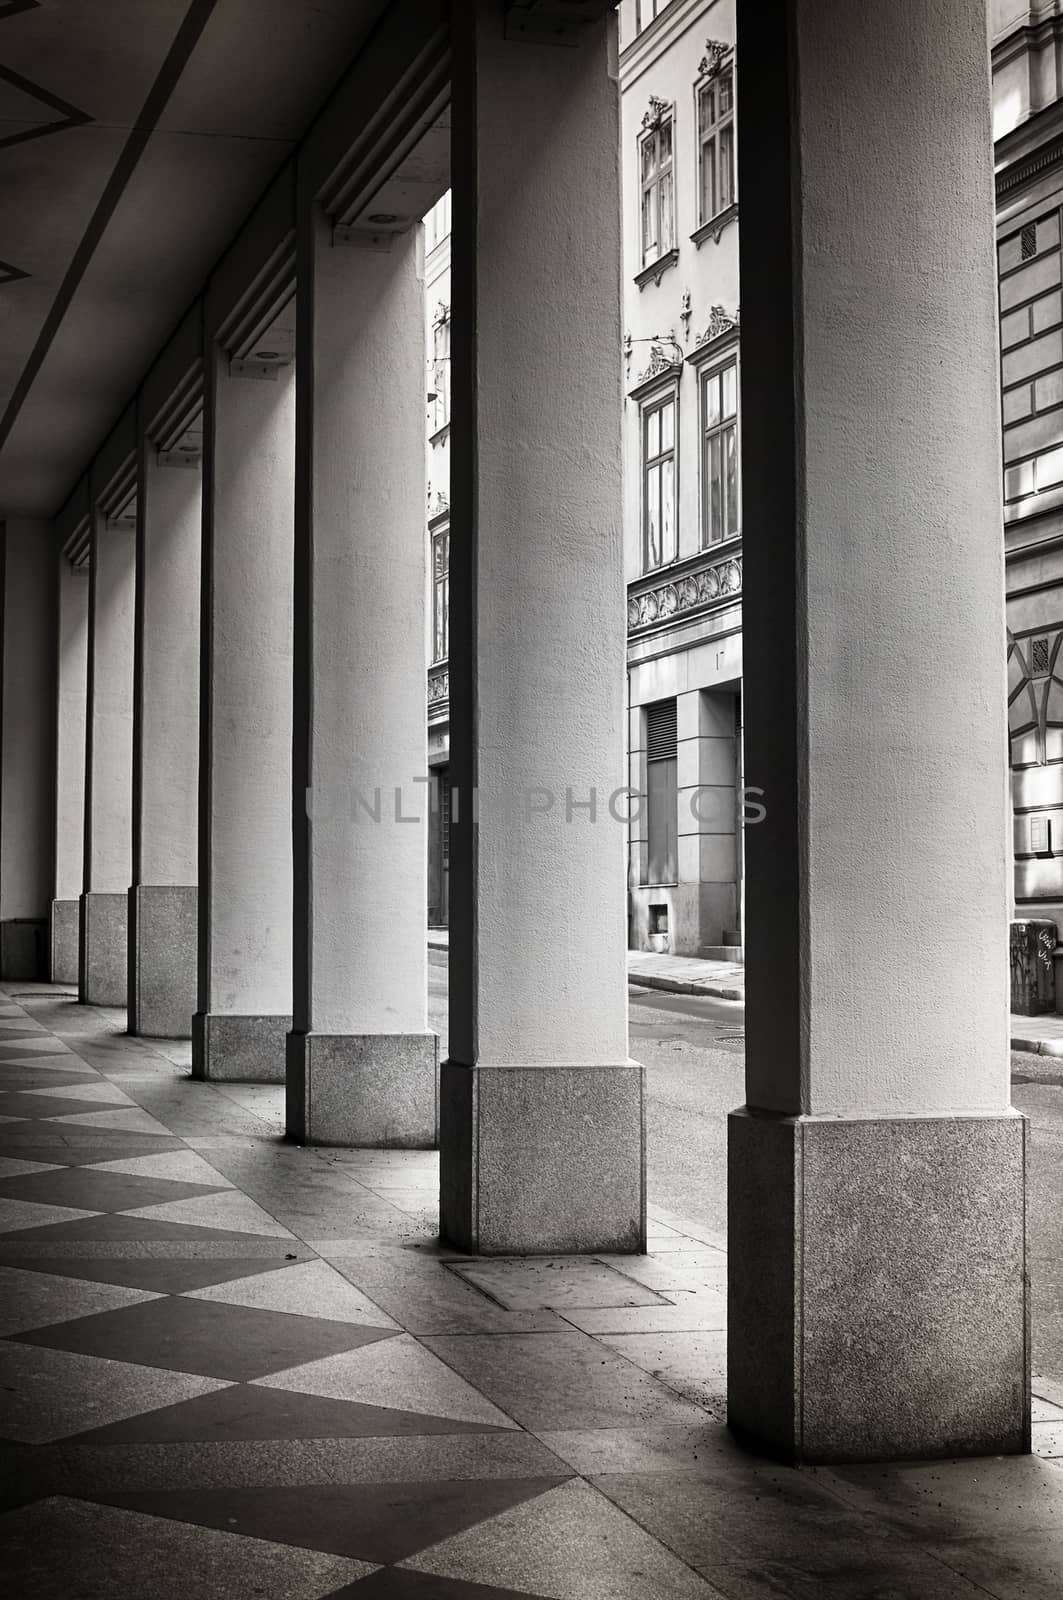 Symmetrical pillars by ankihoglund